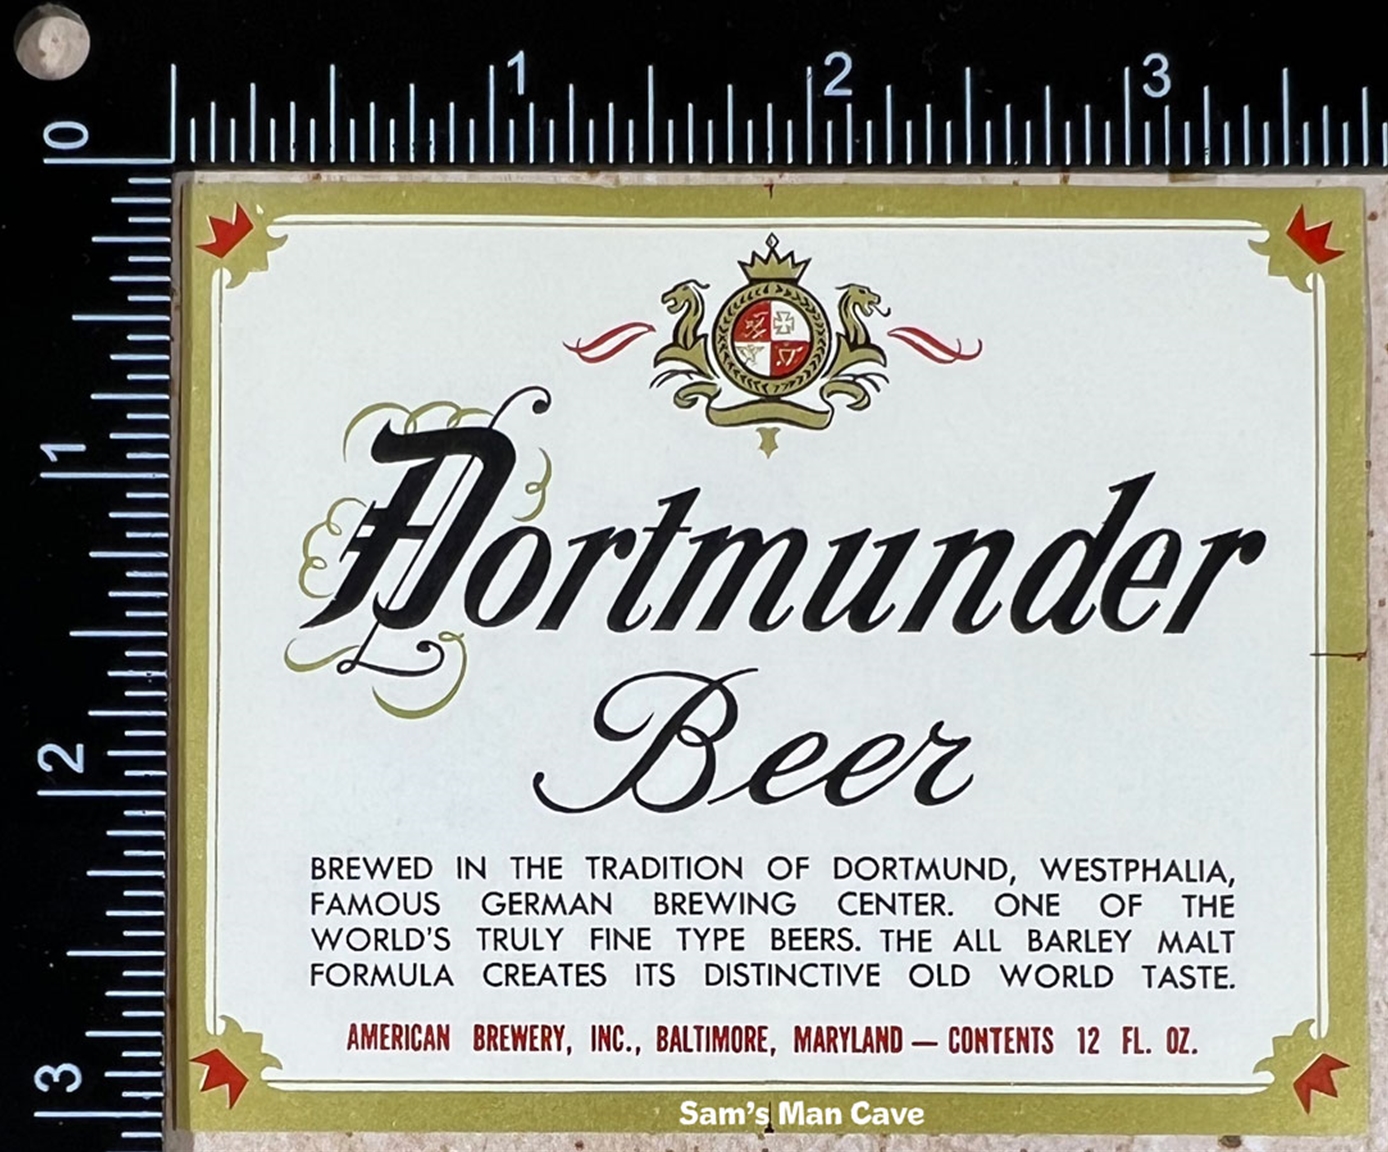 Dortmunder Beer Label